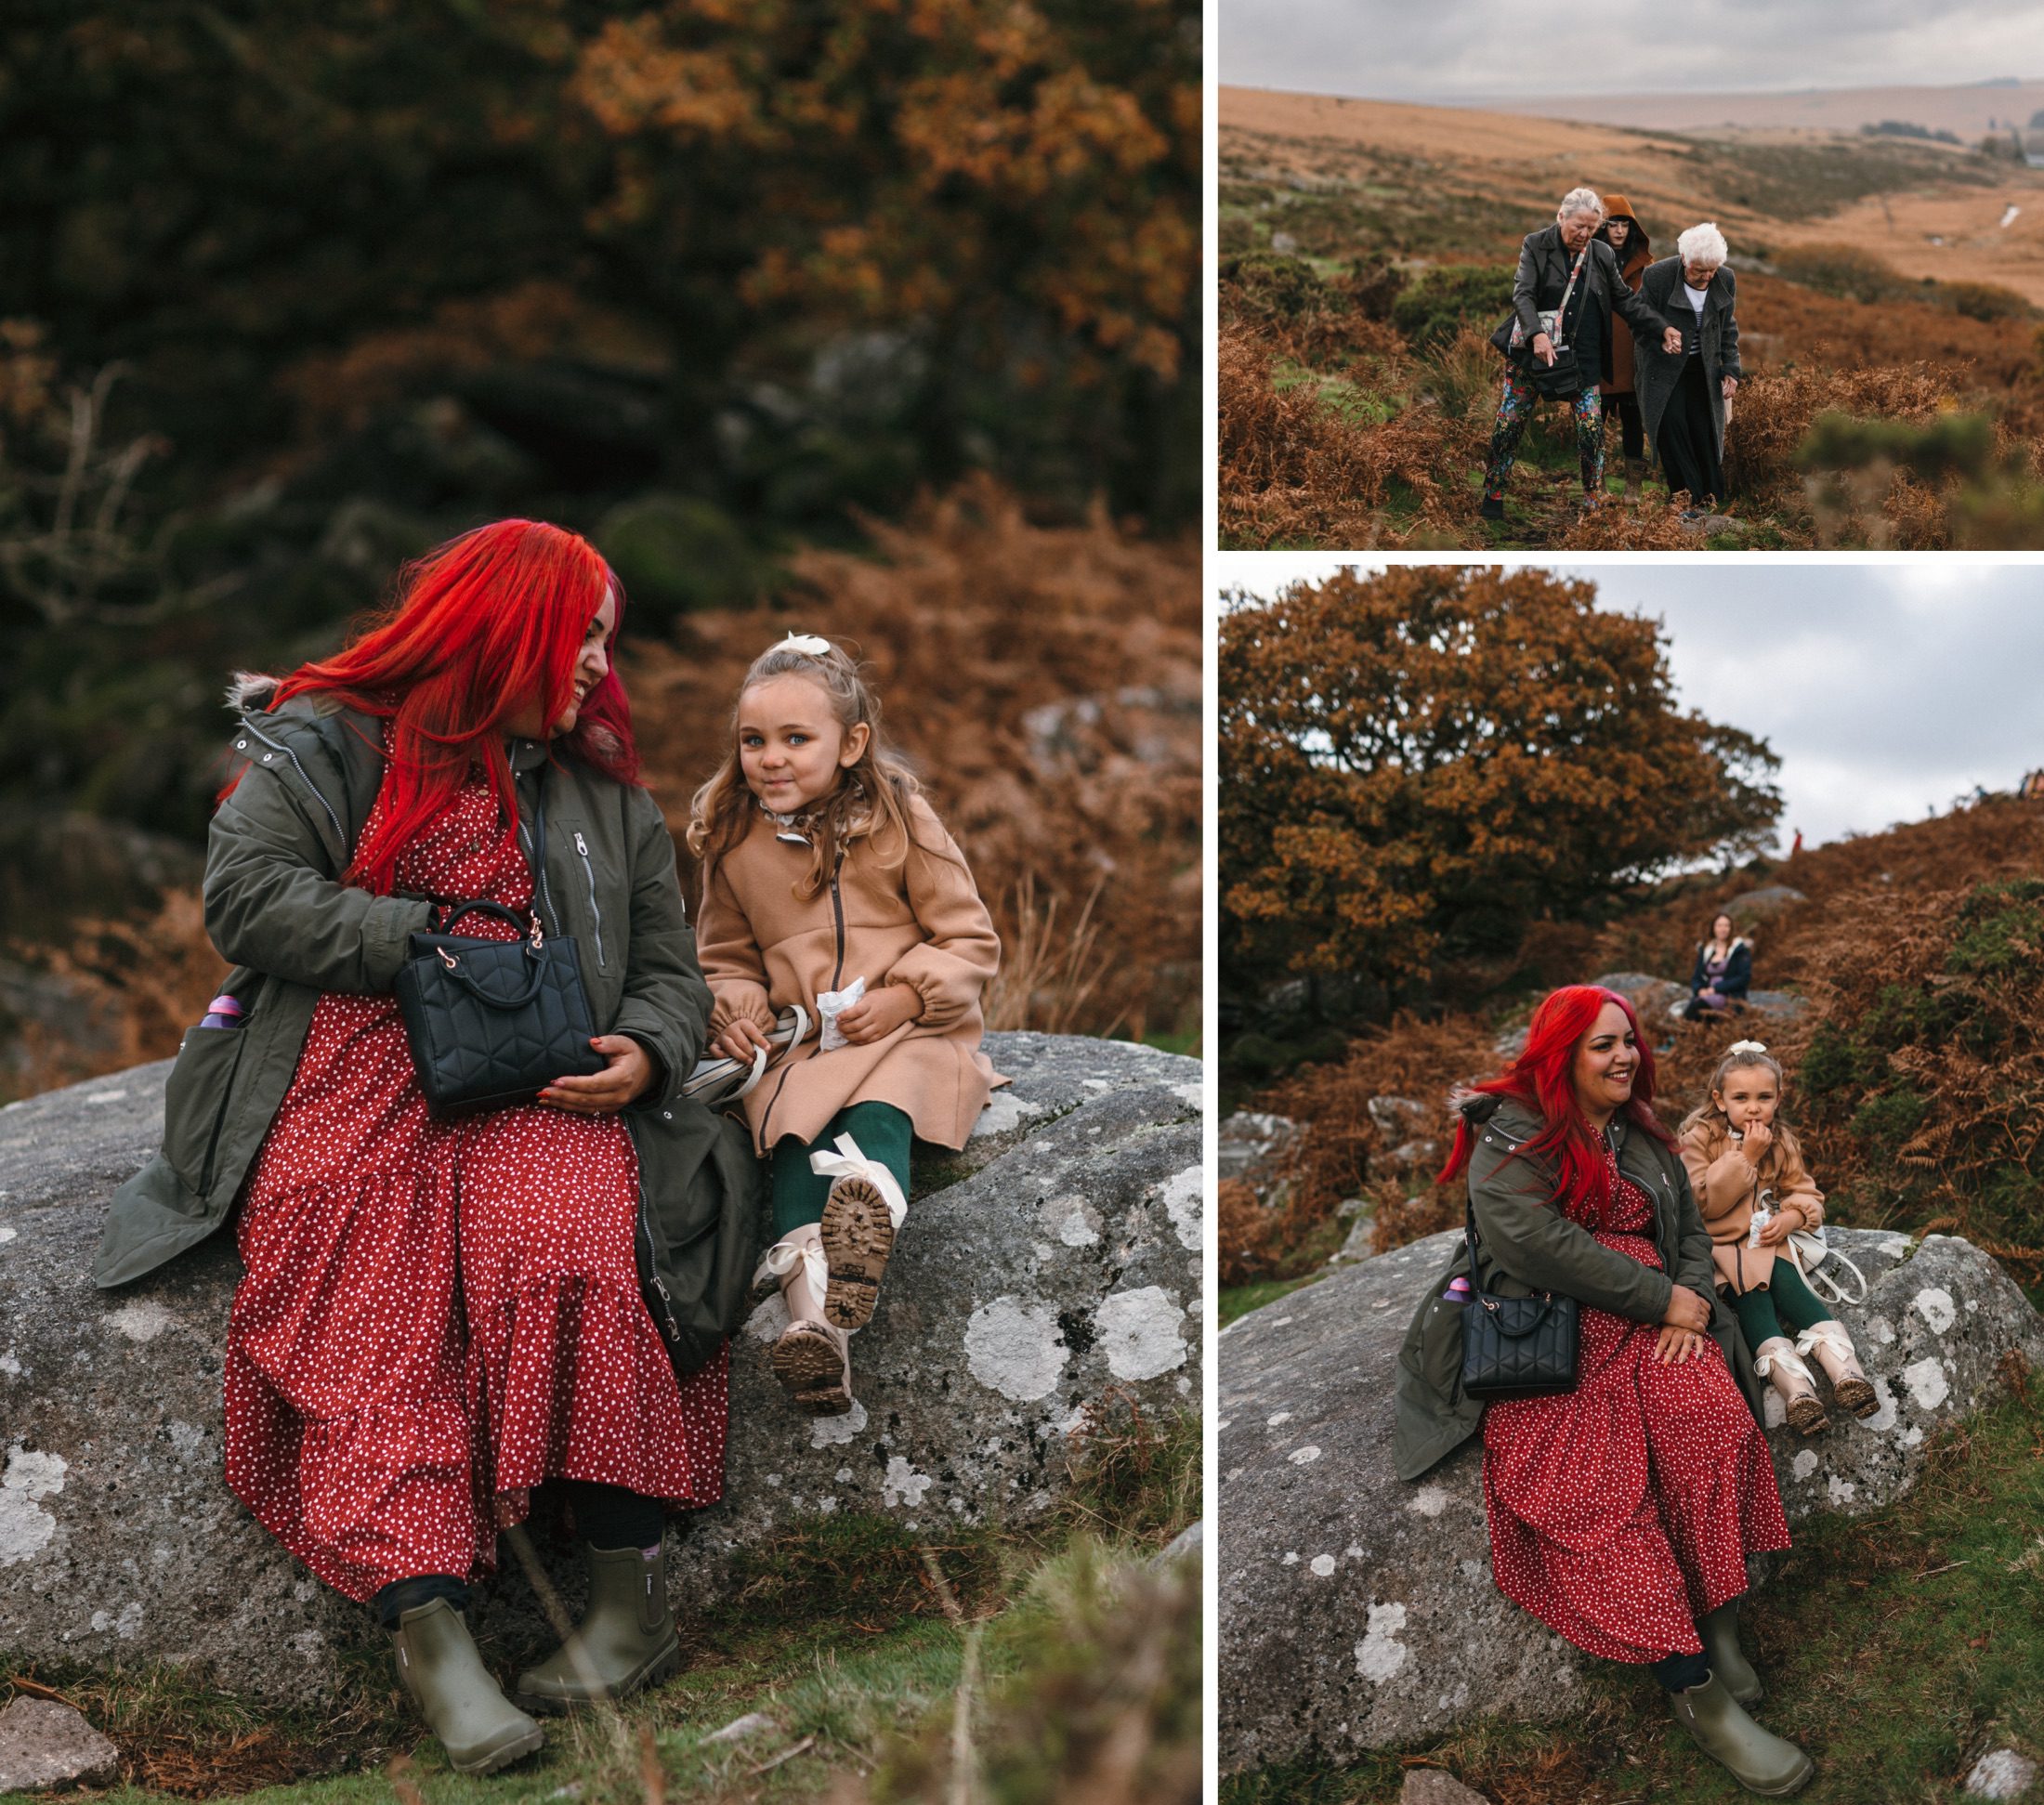 A Pagan Samhain Wedding on Dartmoor - walking to Wistman's Woods